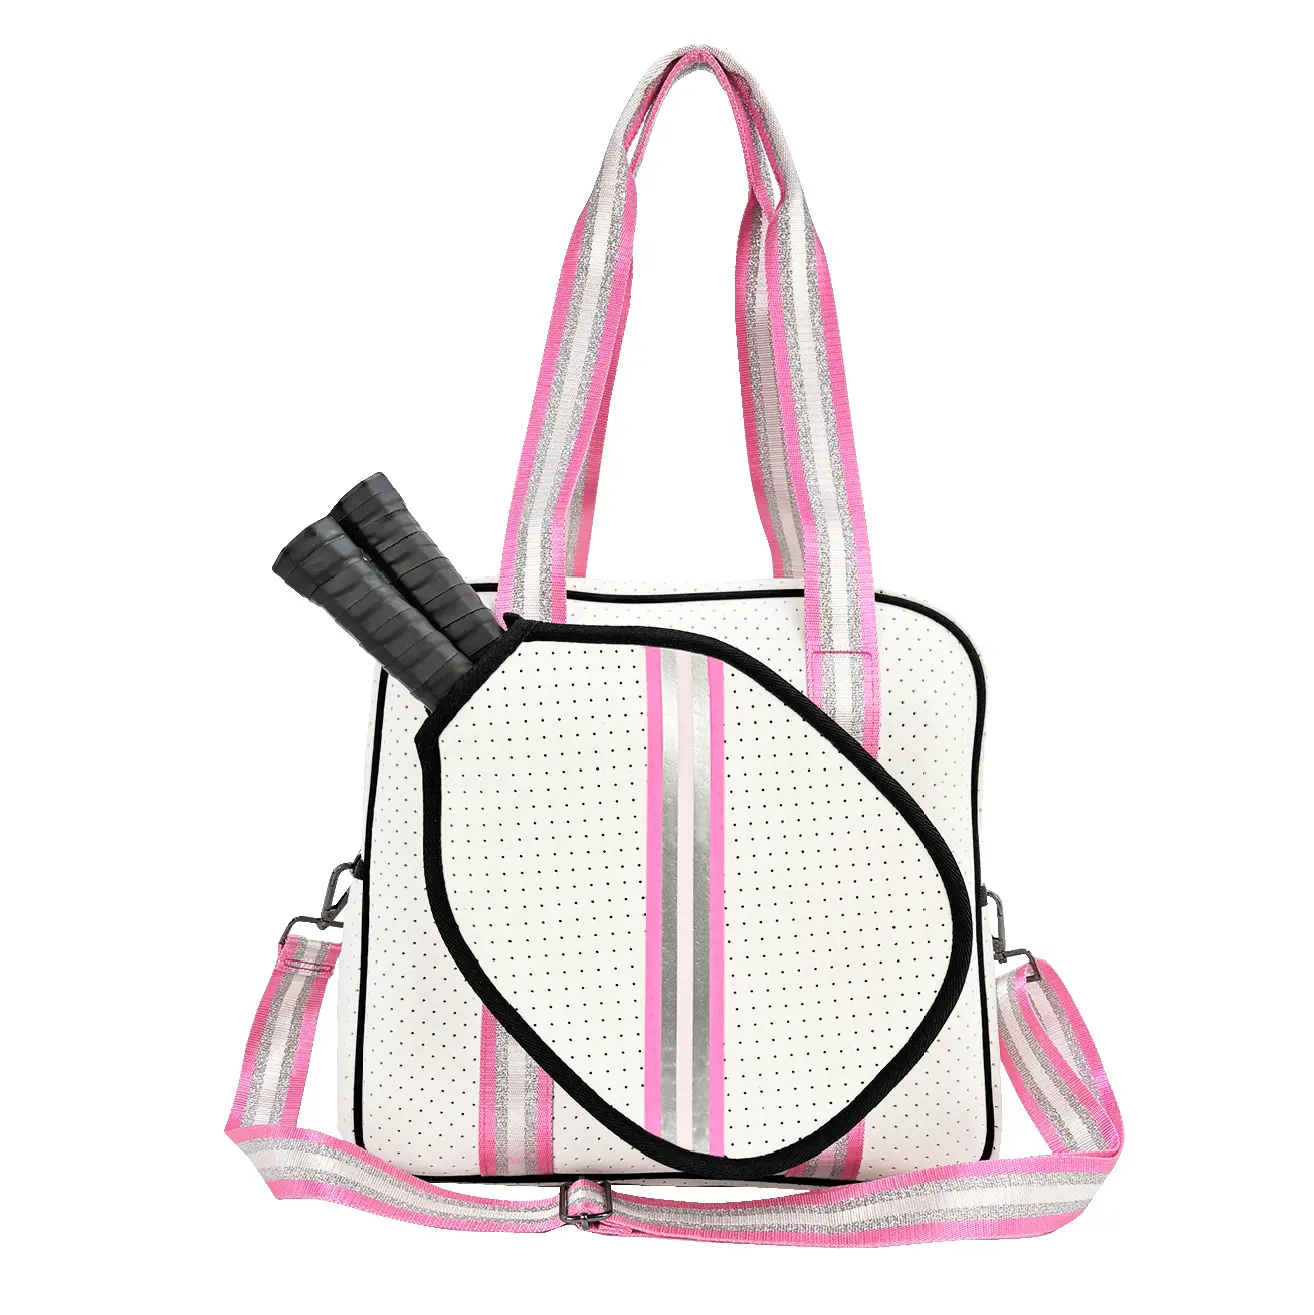 Stock commercio all'ingrosso Tote Tennis Oxford borse in tessuto secchiello Outdoor Fitness spalla Badminton borse da Picnic